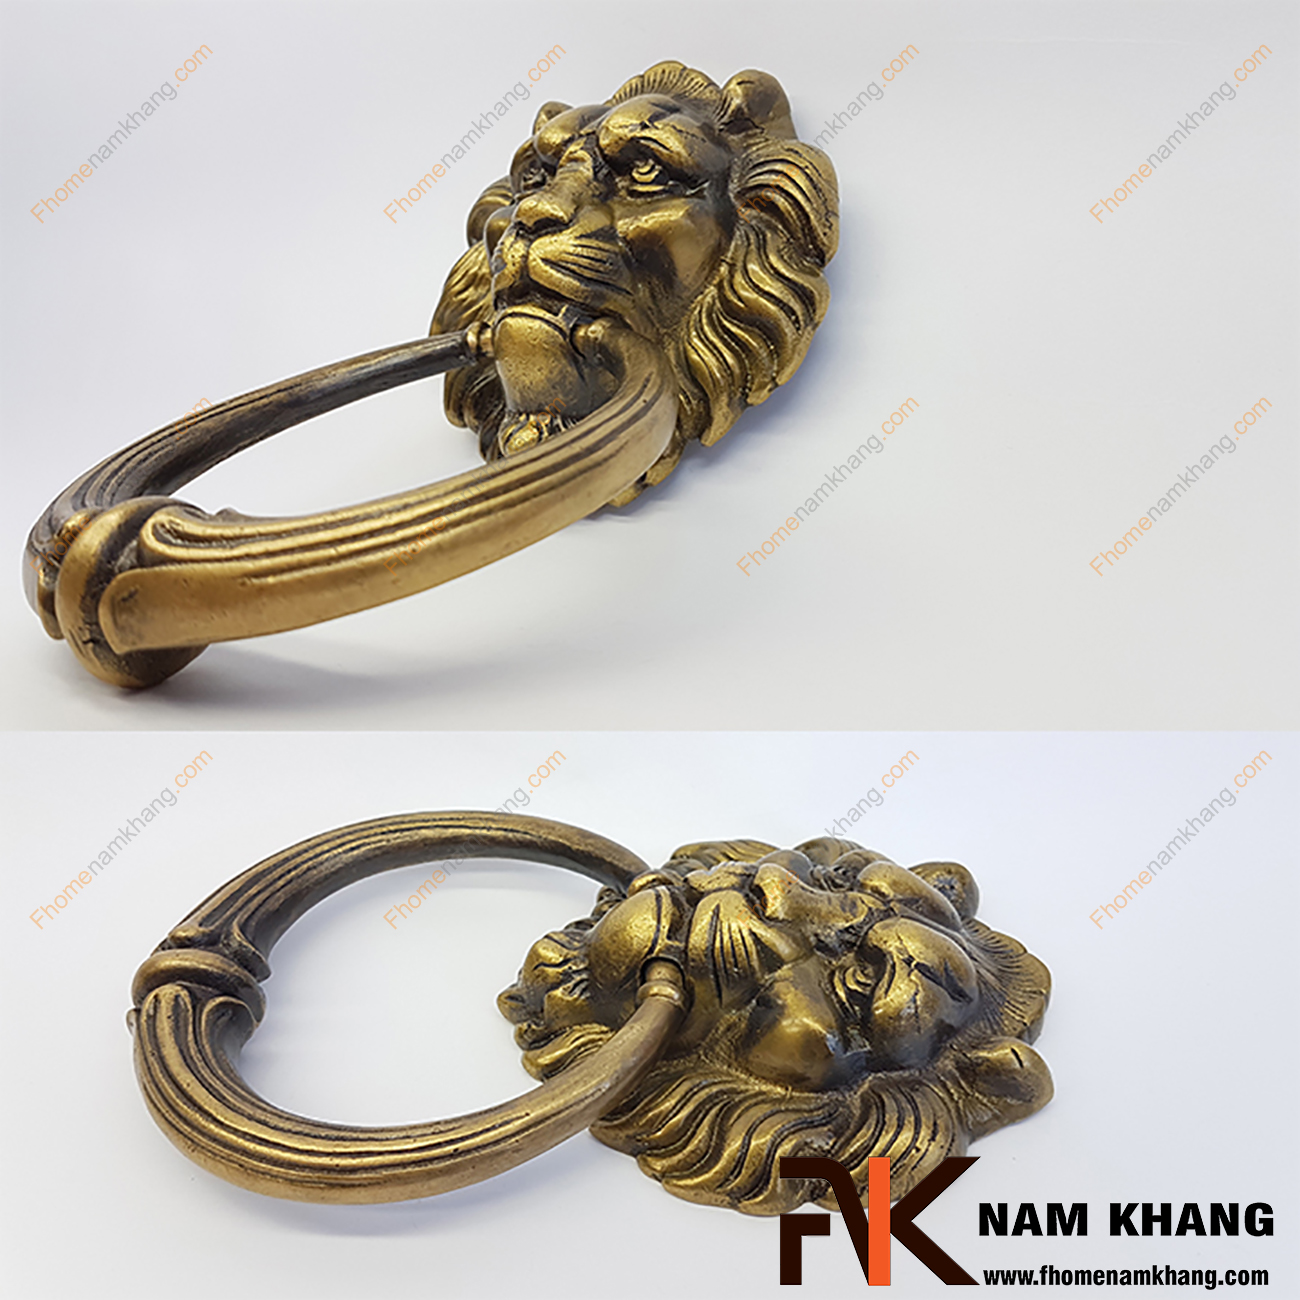 Núm đồng đầu sư tử NKD042-100-190C là một sản phẩm nội thất được chế tạo lấy cảm hứng từ sự uy quyền của loài sư tử dũng mãnh.